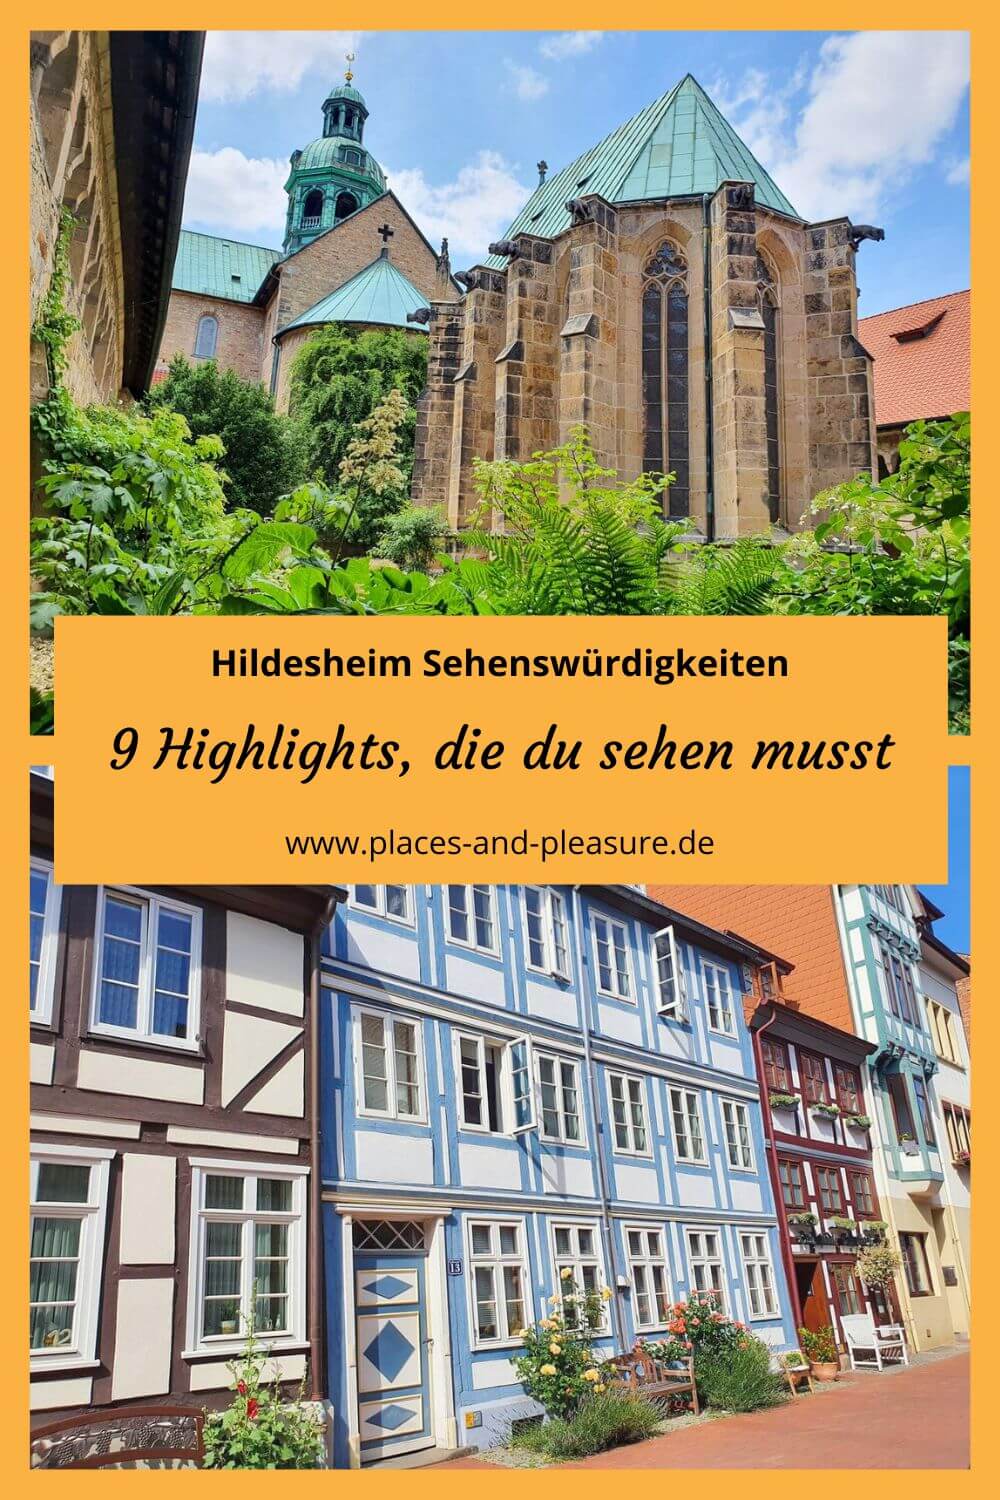 Werbung | Hildesheim Sehenswürdigkeiten reichen von Welterbestätten und Fachwerkcharme bis hin zu moderner Streetart. Mehr zu den Highlights gibt es im Beitrag. Was du auf einer Städtereise dort alles entdecken kannst, erfährst du im Blogbeitrag.